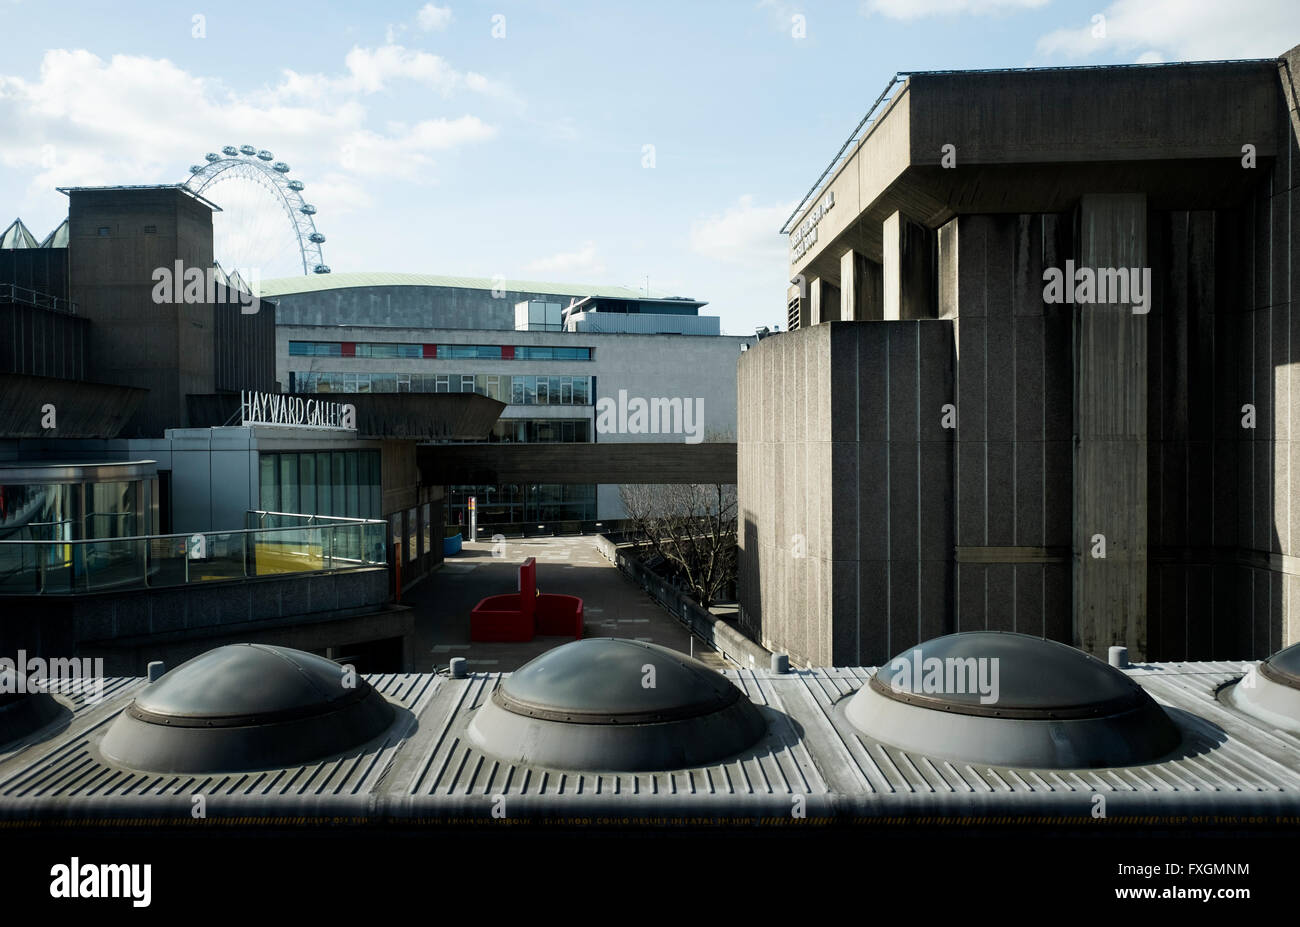 South Bank Centre, Londres, avec la Hayward Gallery et London Eye en arrière-plan Banque D'Images